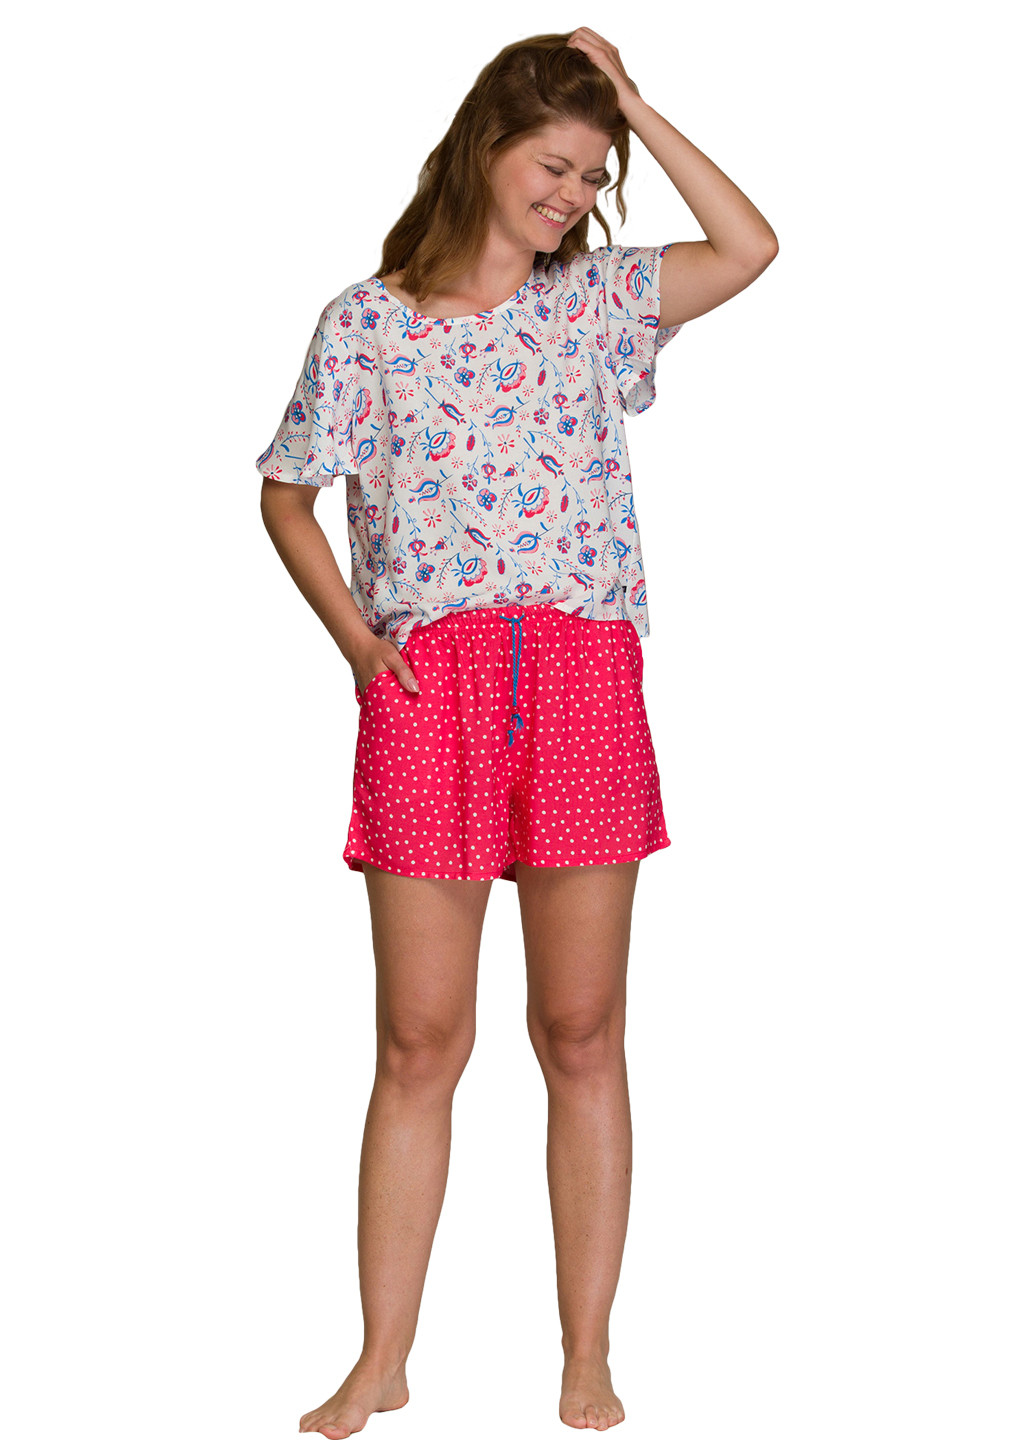 Комбинированная всесезон пижама (футболка, шорты) футболка + шорты Key